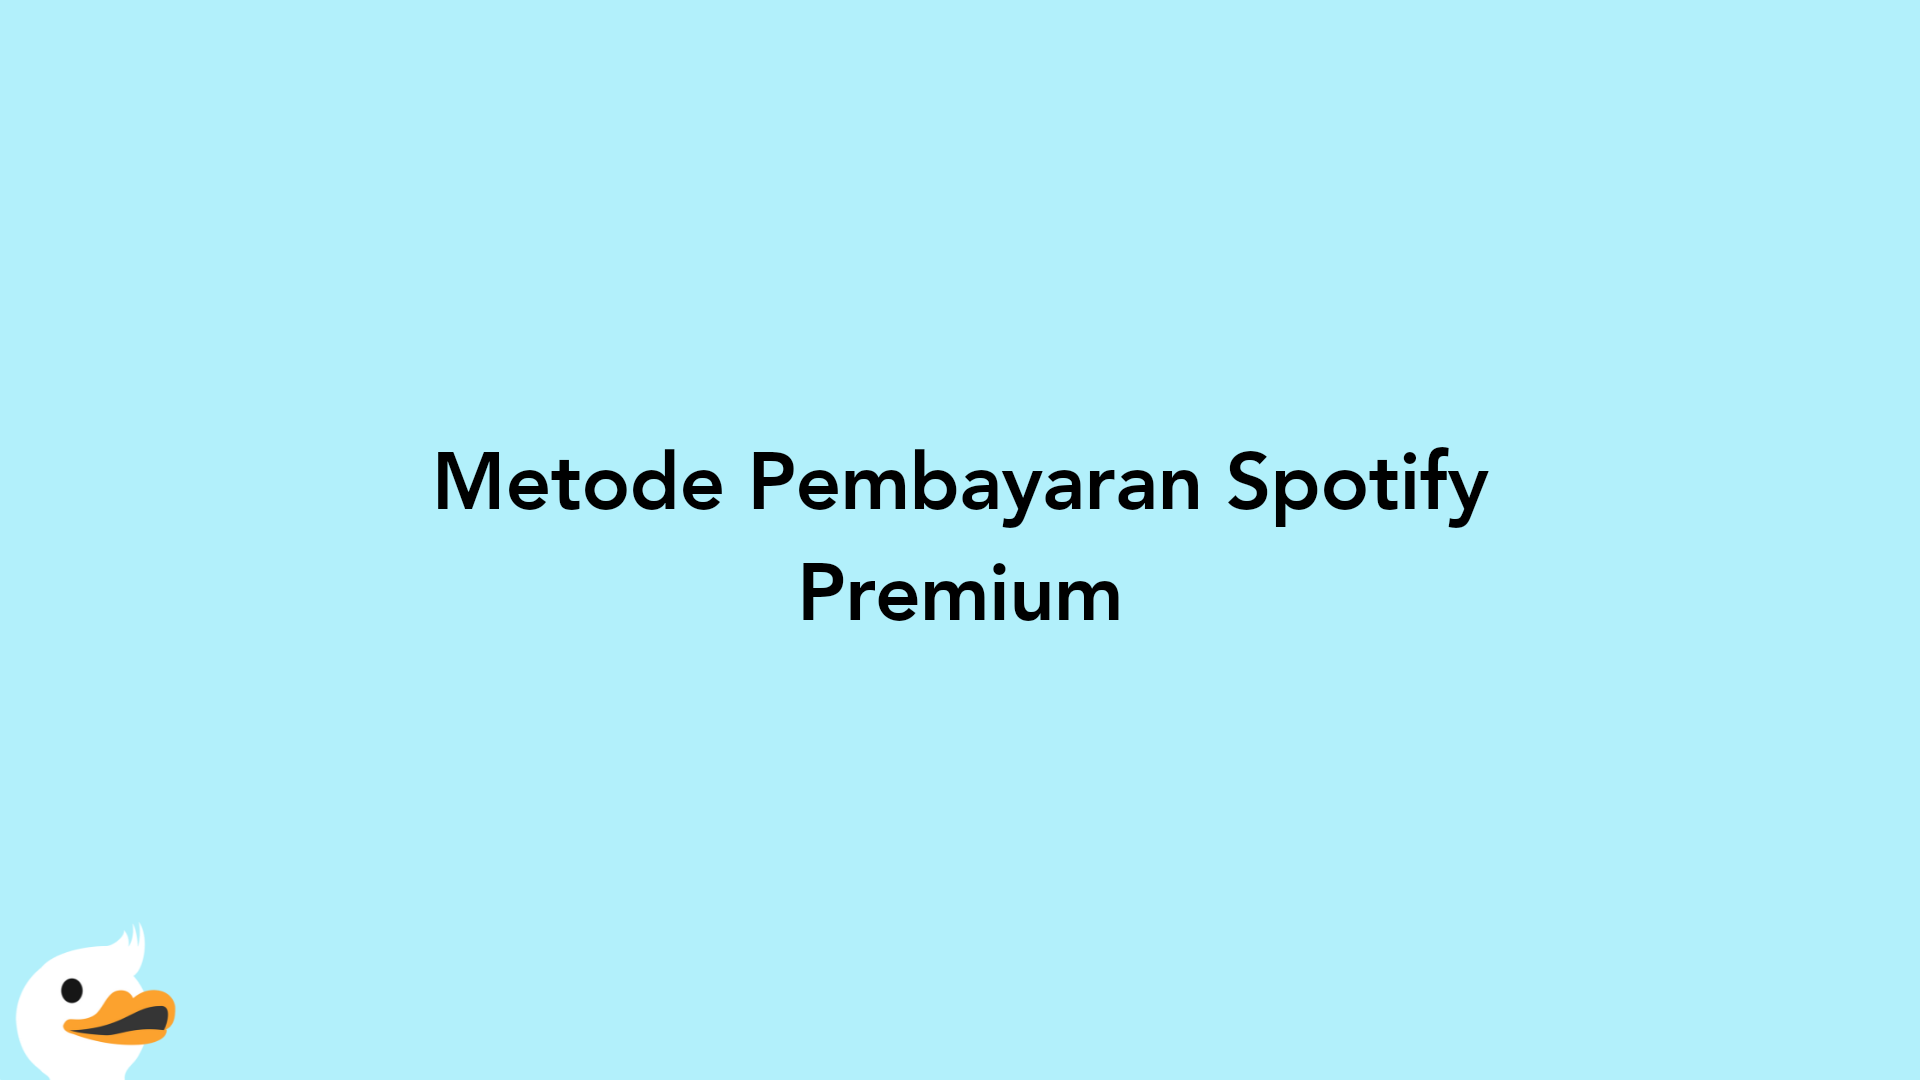 Metode Pembayaran Spotify Premium